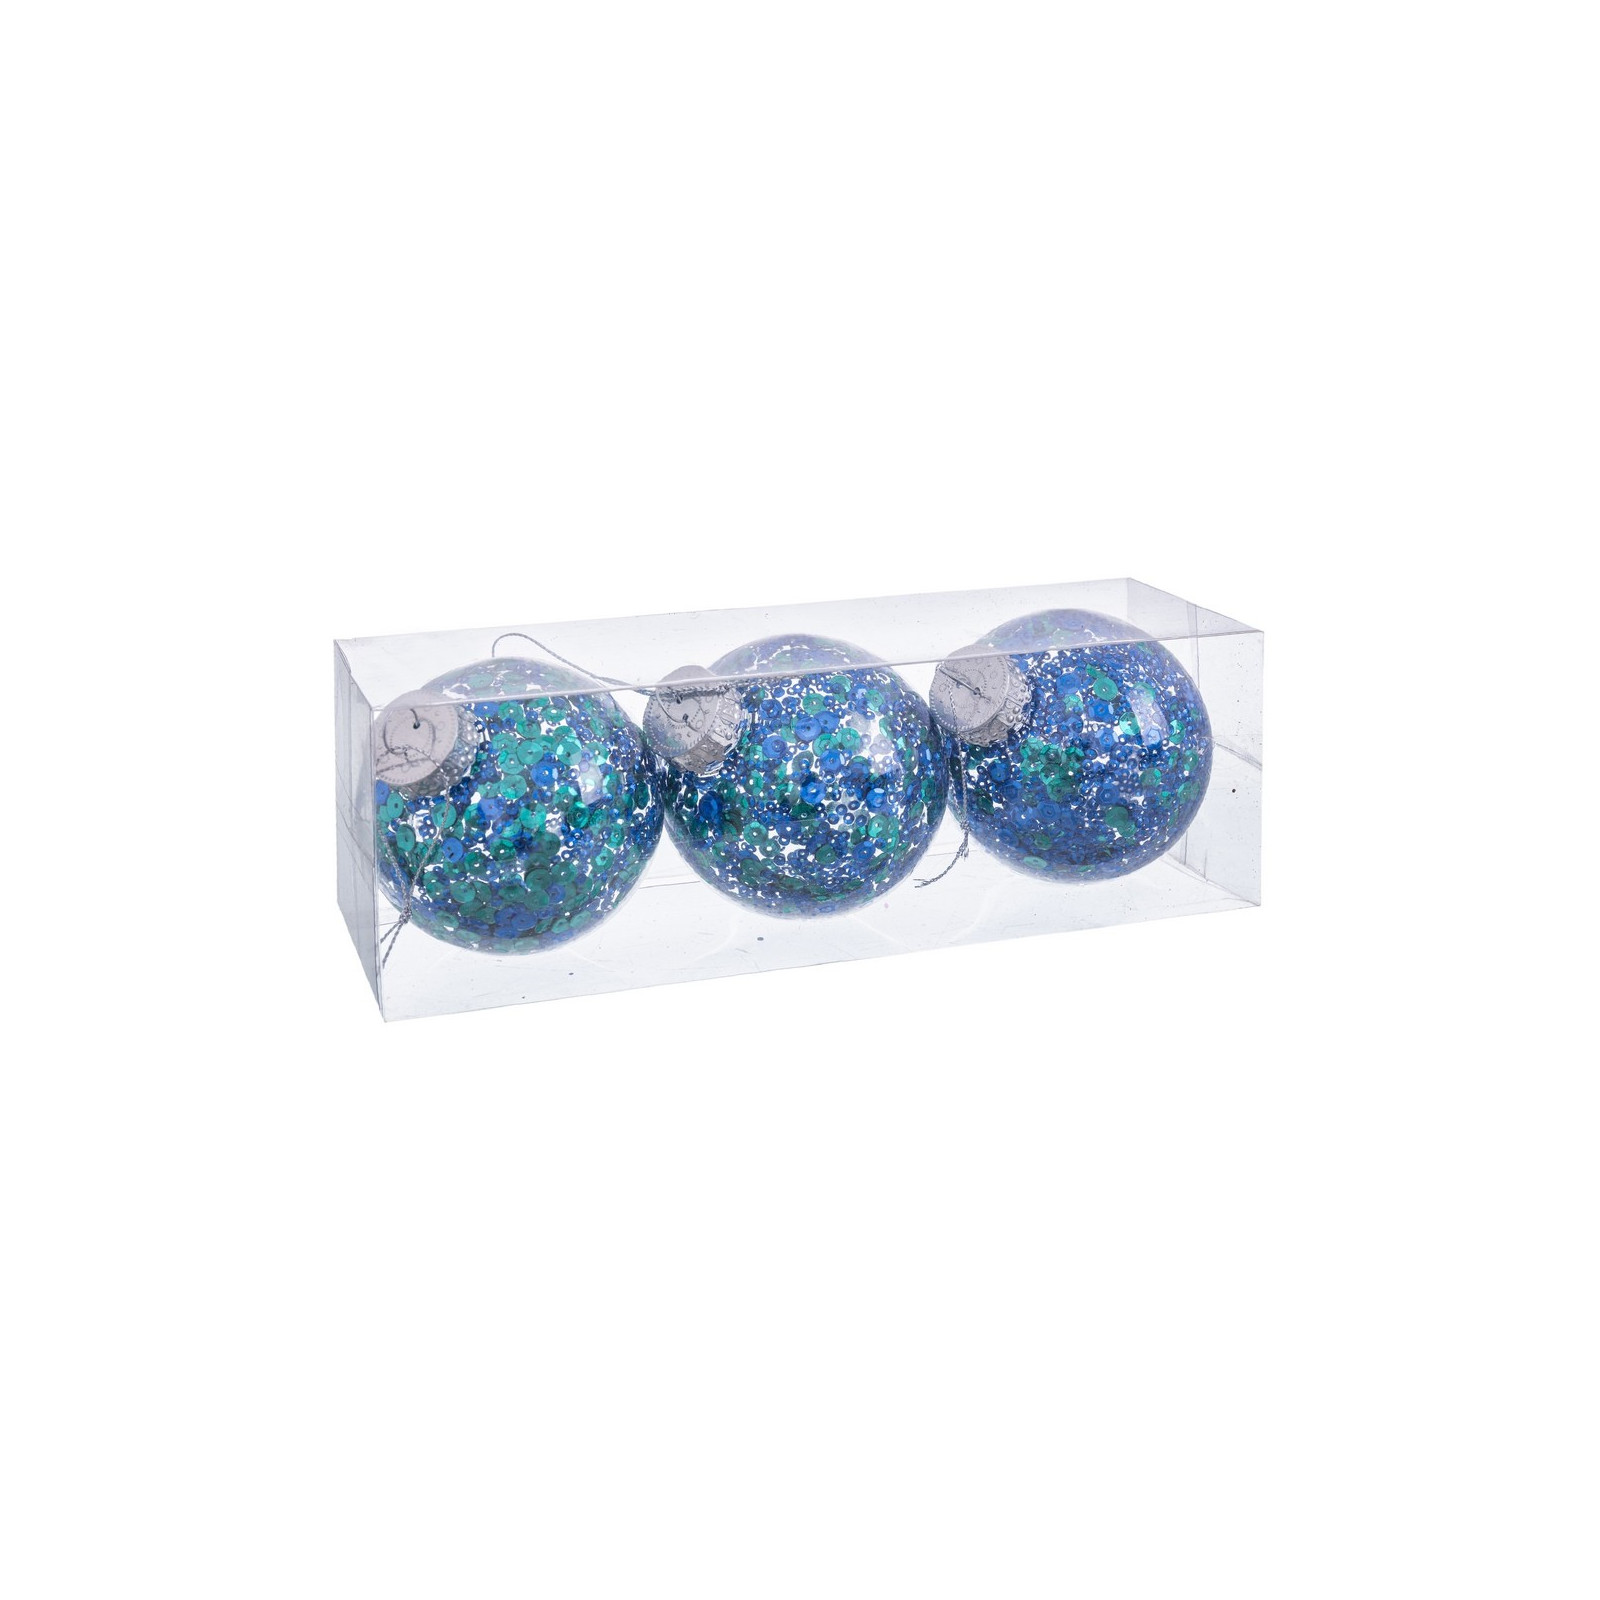 S 3 bolas azuis esverdeadas transparentes 8 x 8 x 8 cm